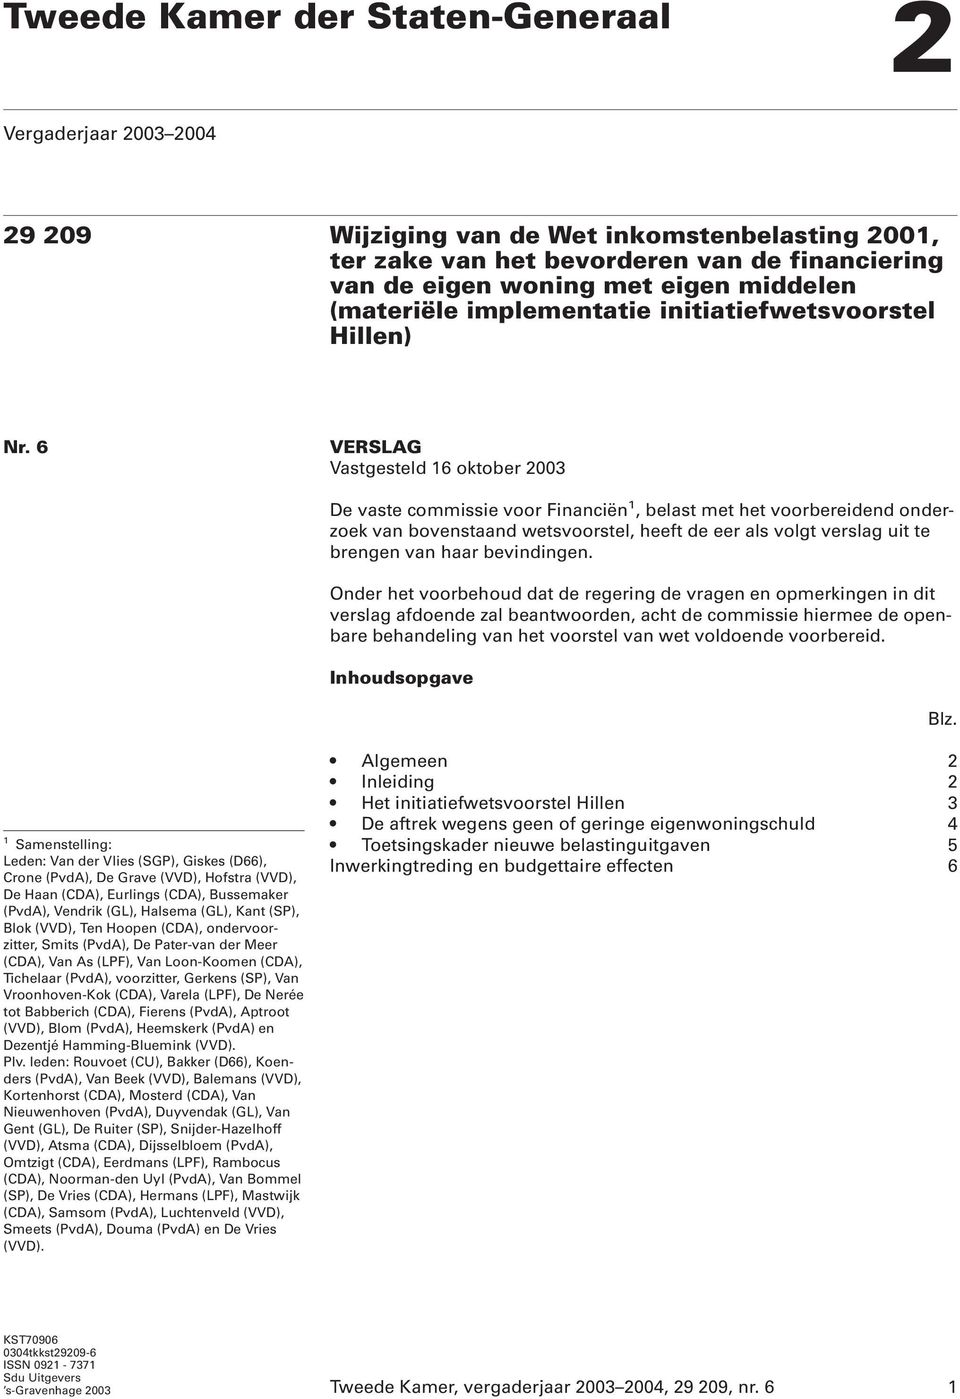 6 VERSLAG Vastgesteld 16 oktober 2003 De vaste commissie voor Financiën 1, belast met het voorbereidend onderzoek van bovenstaand wetsvoorstel, heeft de eer als volgt verslag uit te brengen van haar